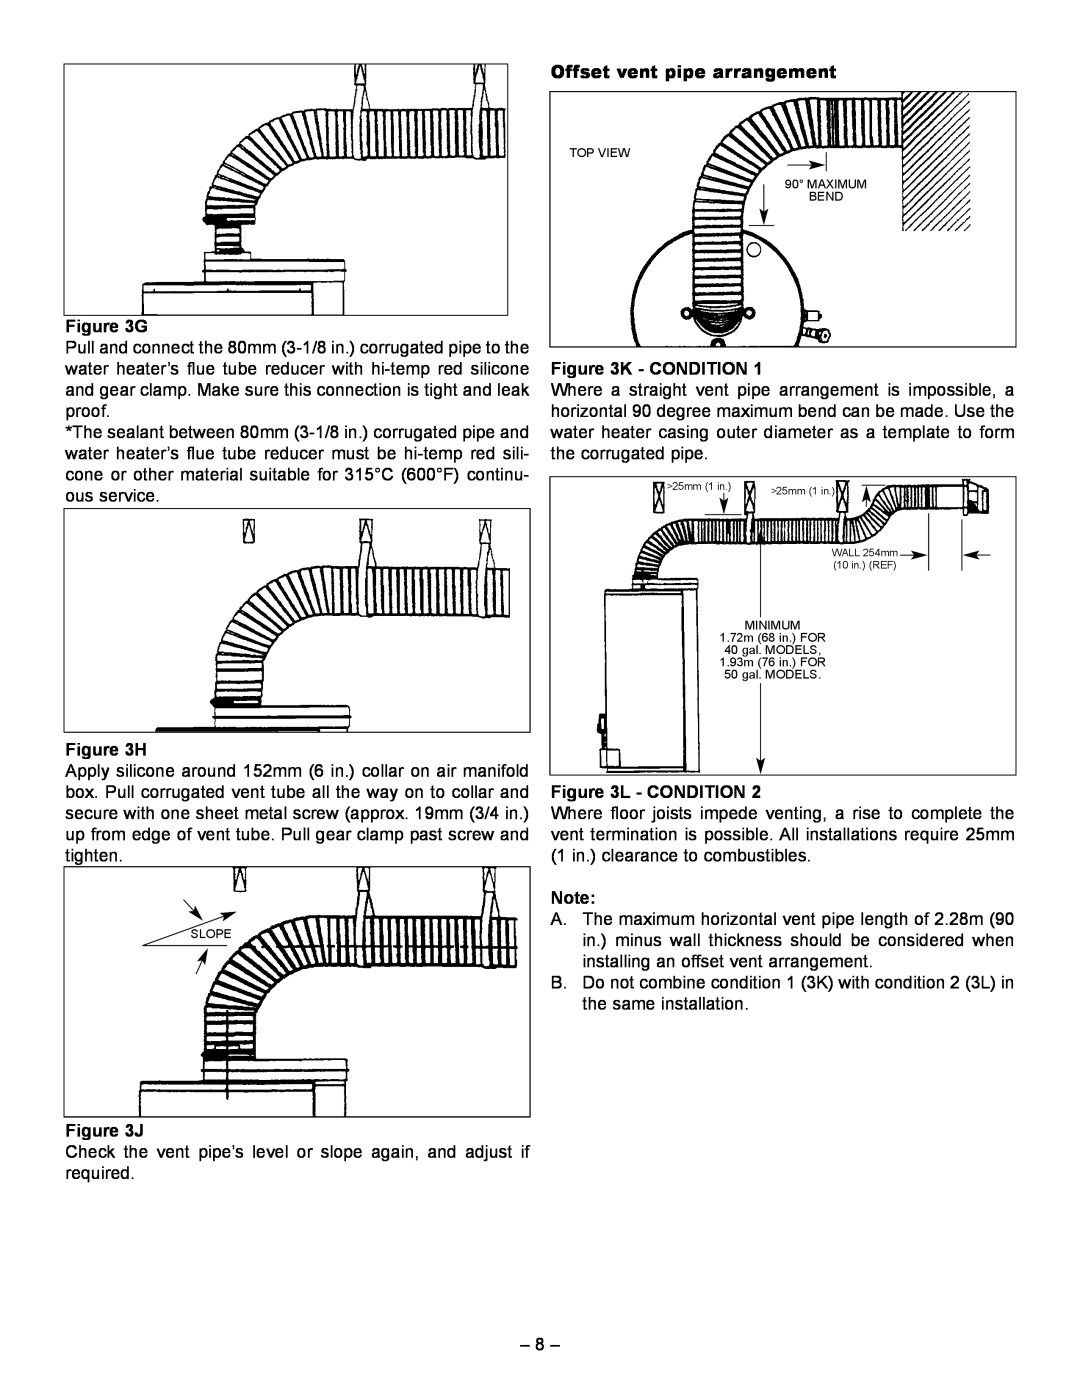 GSW 61009 REV. C (09-03) manual G, H, J, Offset vent pipe arrangement, K - Condition, L - Condition 